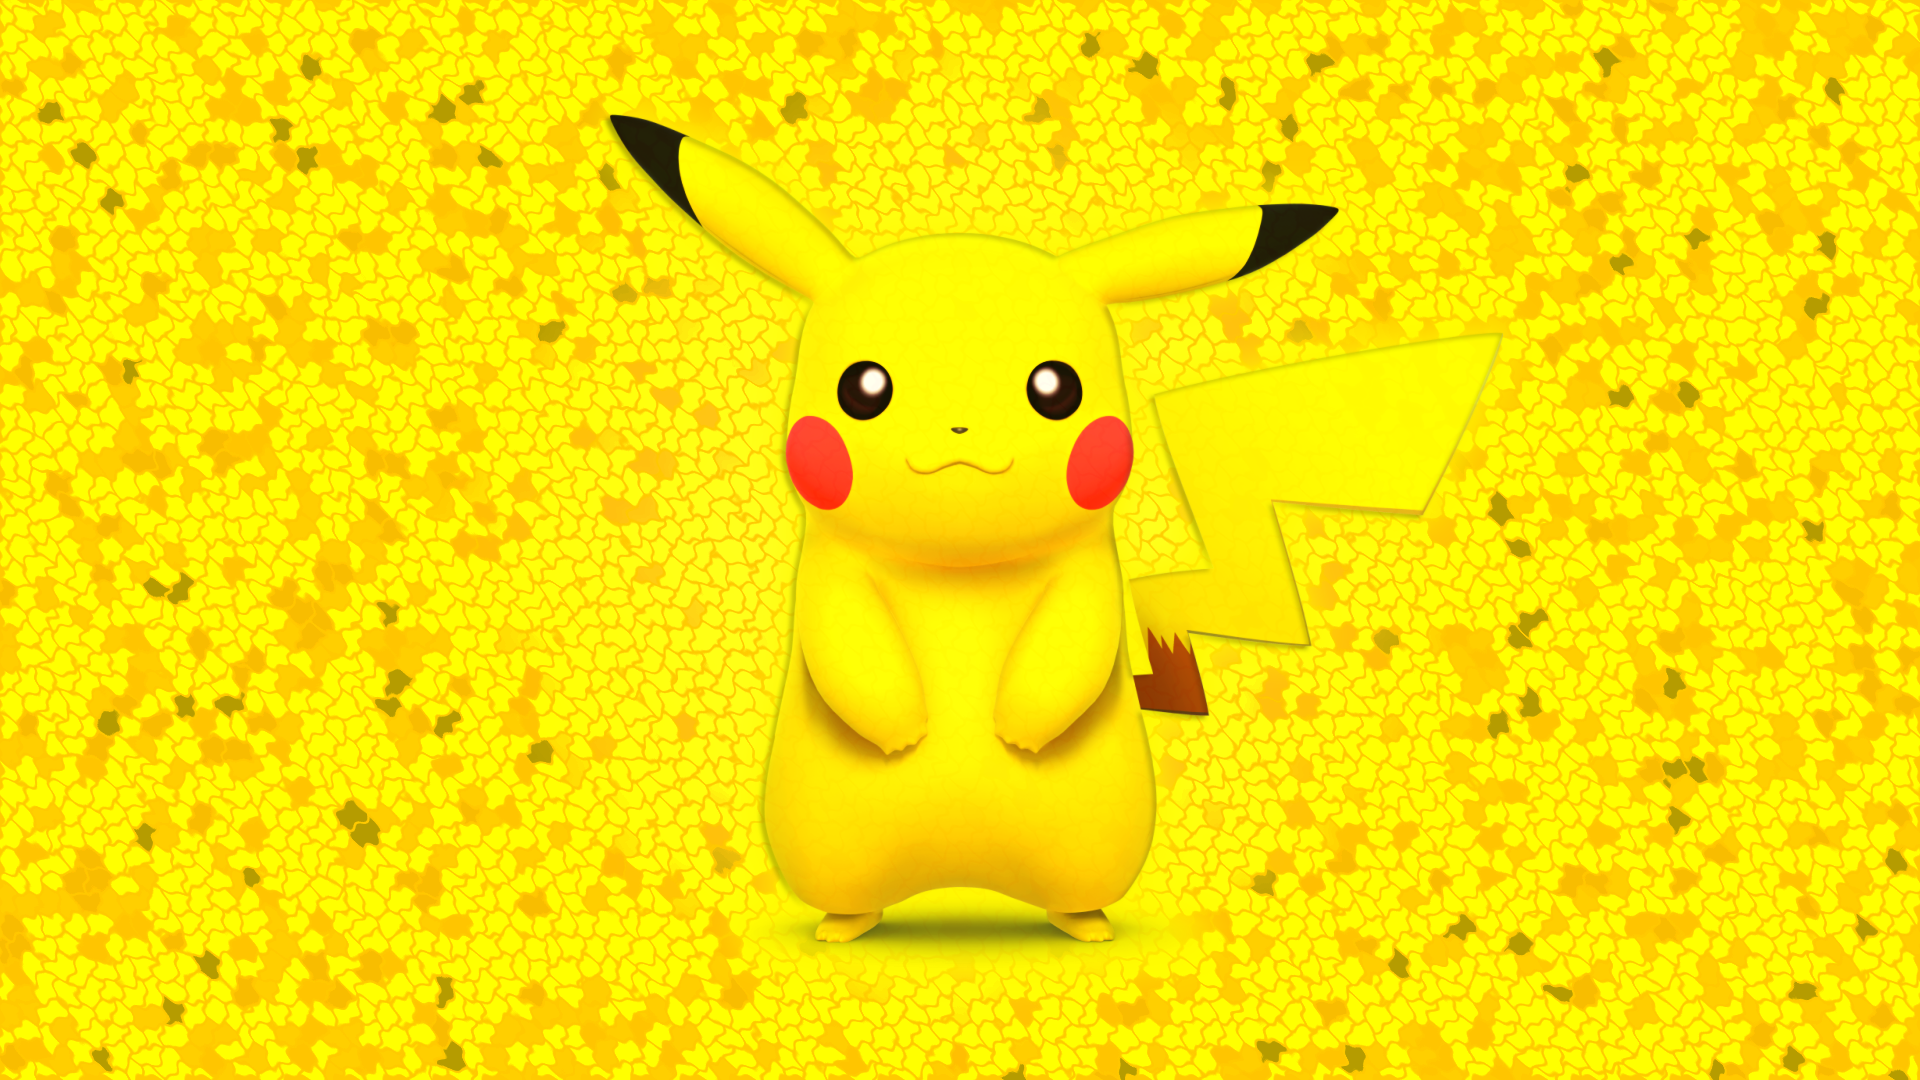 Pikachu Cartoon Cute 1080p Wallpaper WallpaperLepi